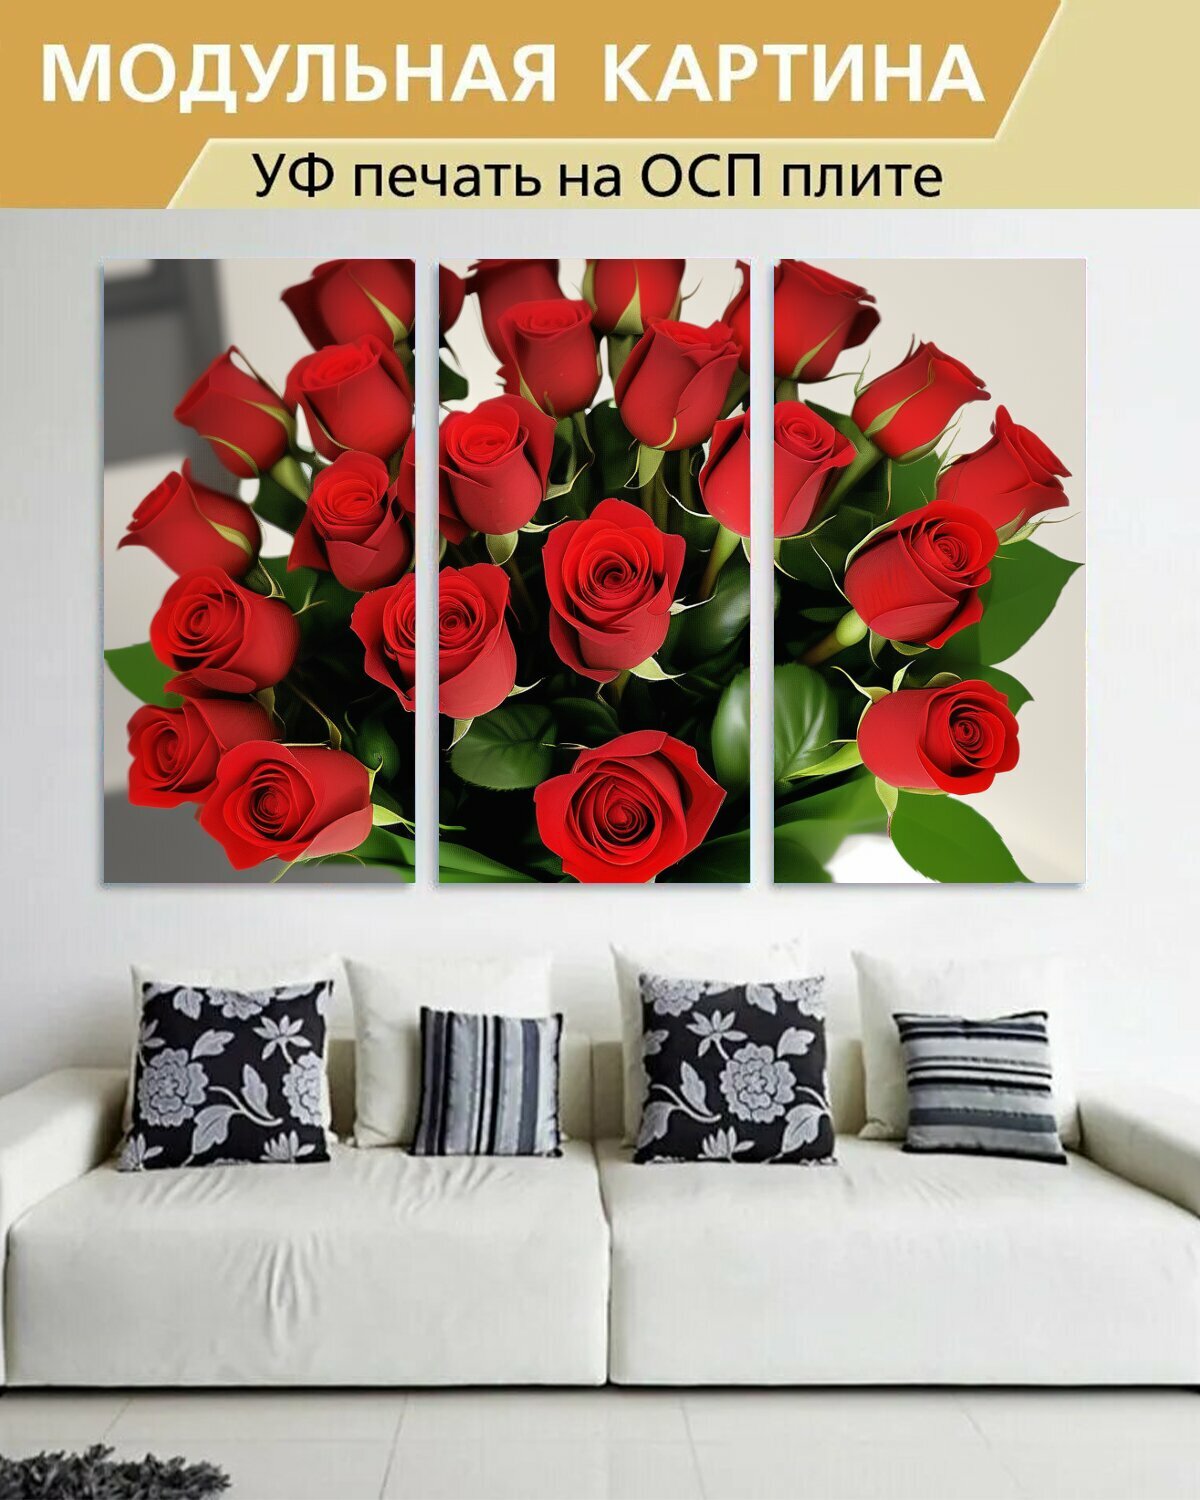 Модульная картина на ОСП любителям природы "Цветы, роза, красный букет" 188x125 см. 3 части для интерьера на стену